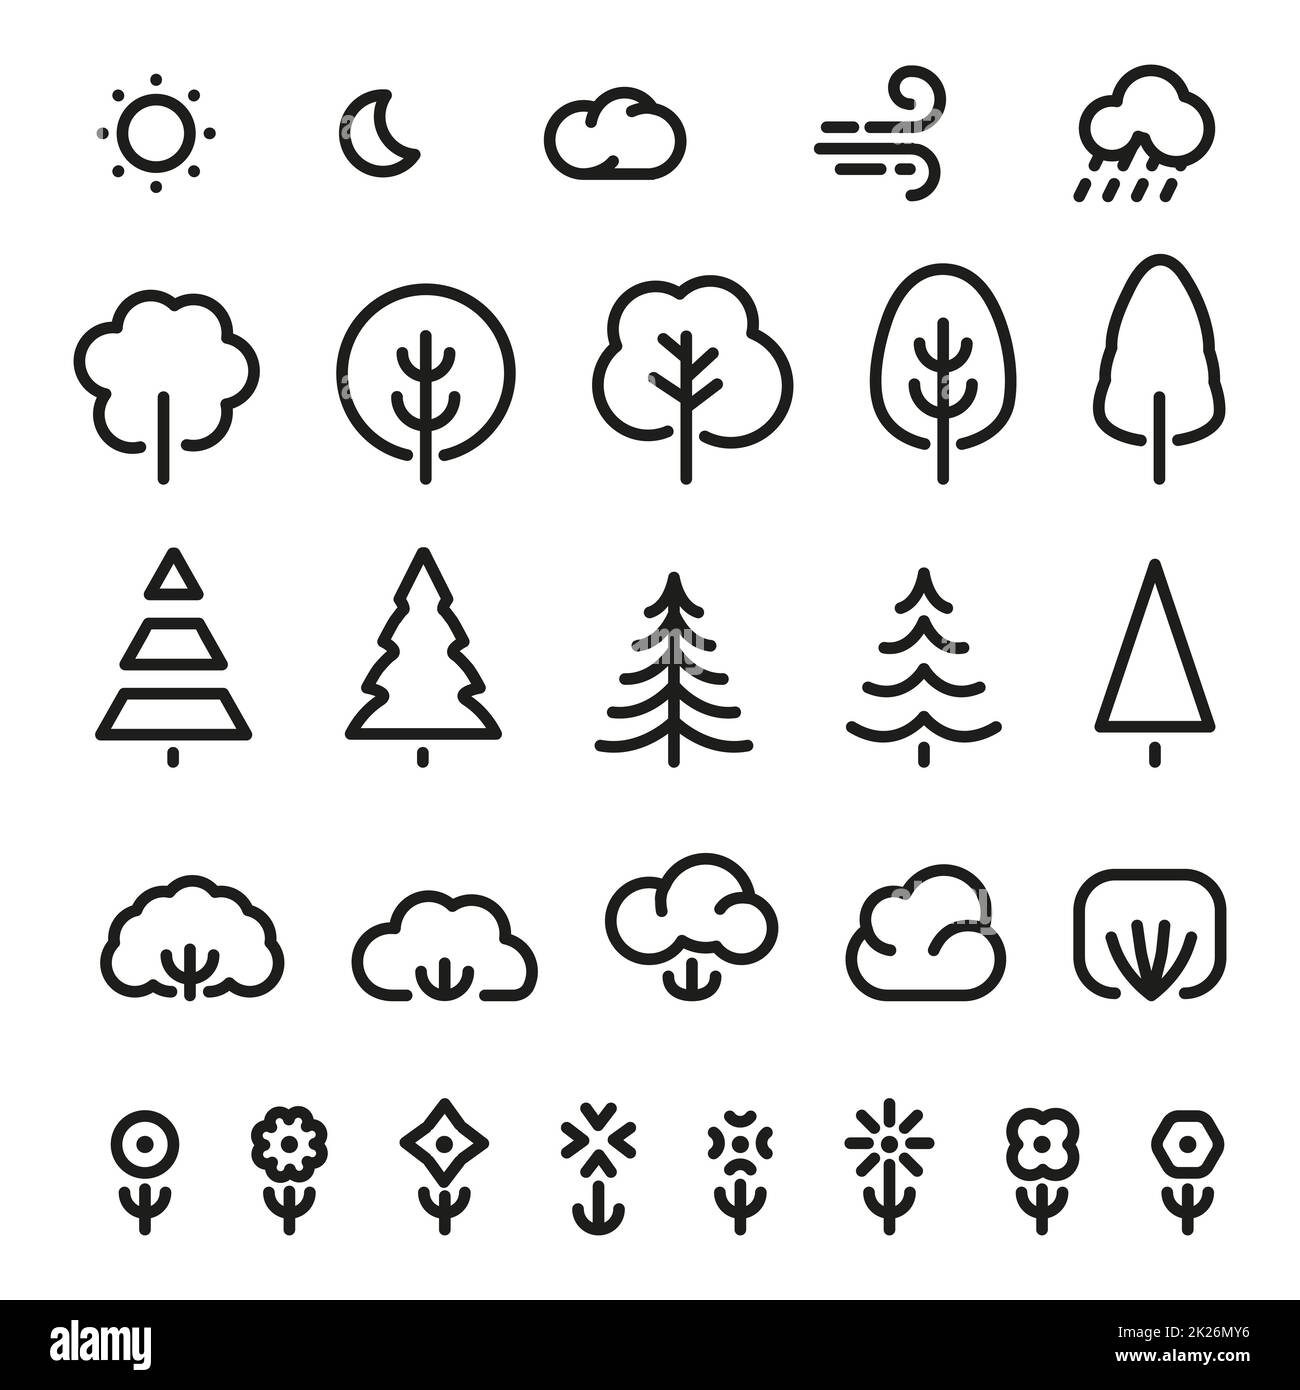 Isolierte schwarzer Farbe skizziert Nadelbäume, Sträucher, Blumen und Wettervorhersage Zeichen in einfarbige Linien Logo-Set. Einfache flache Vektor-Illustrationen der Naturelemente auf weiß. Eco-Symbole. Stockfoto